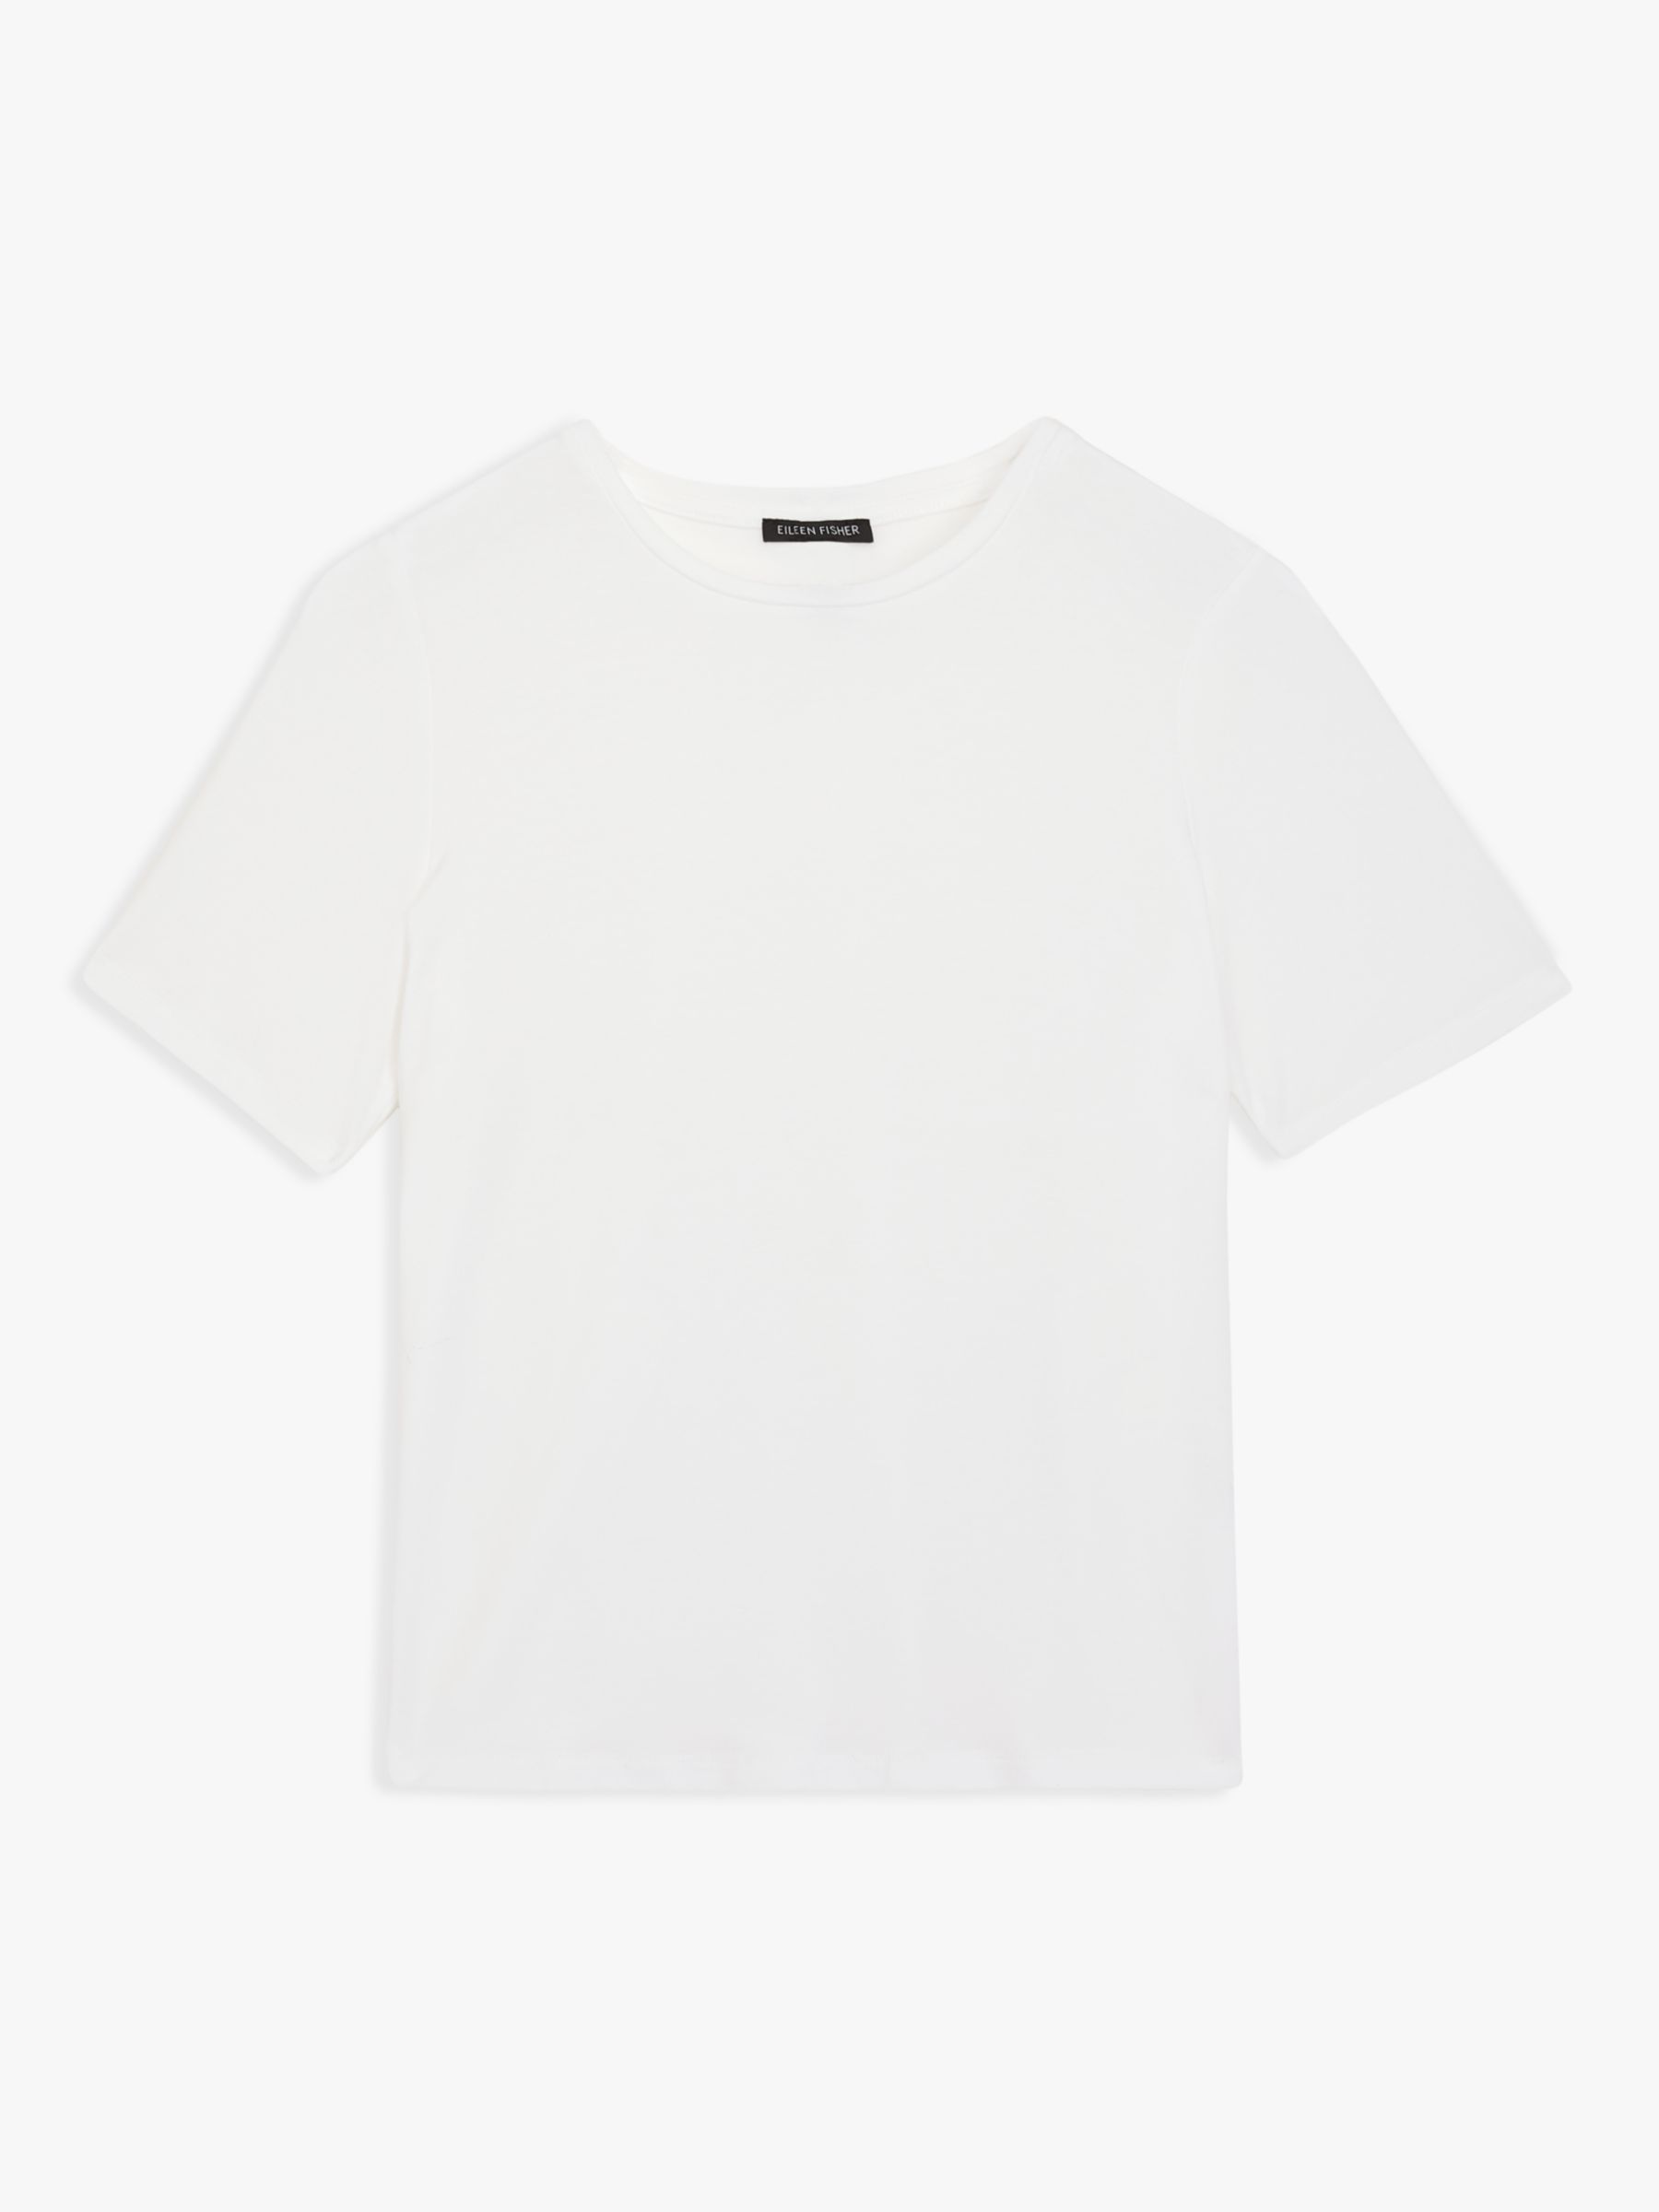 EILEEN FISHER Plain Short Sleeve T-Shirt, White at John Lewis & Partners